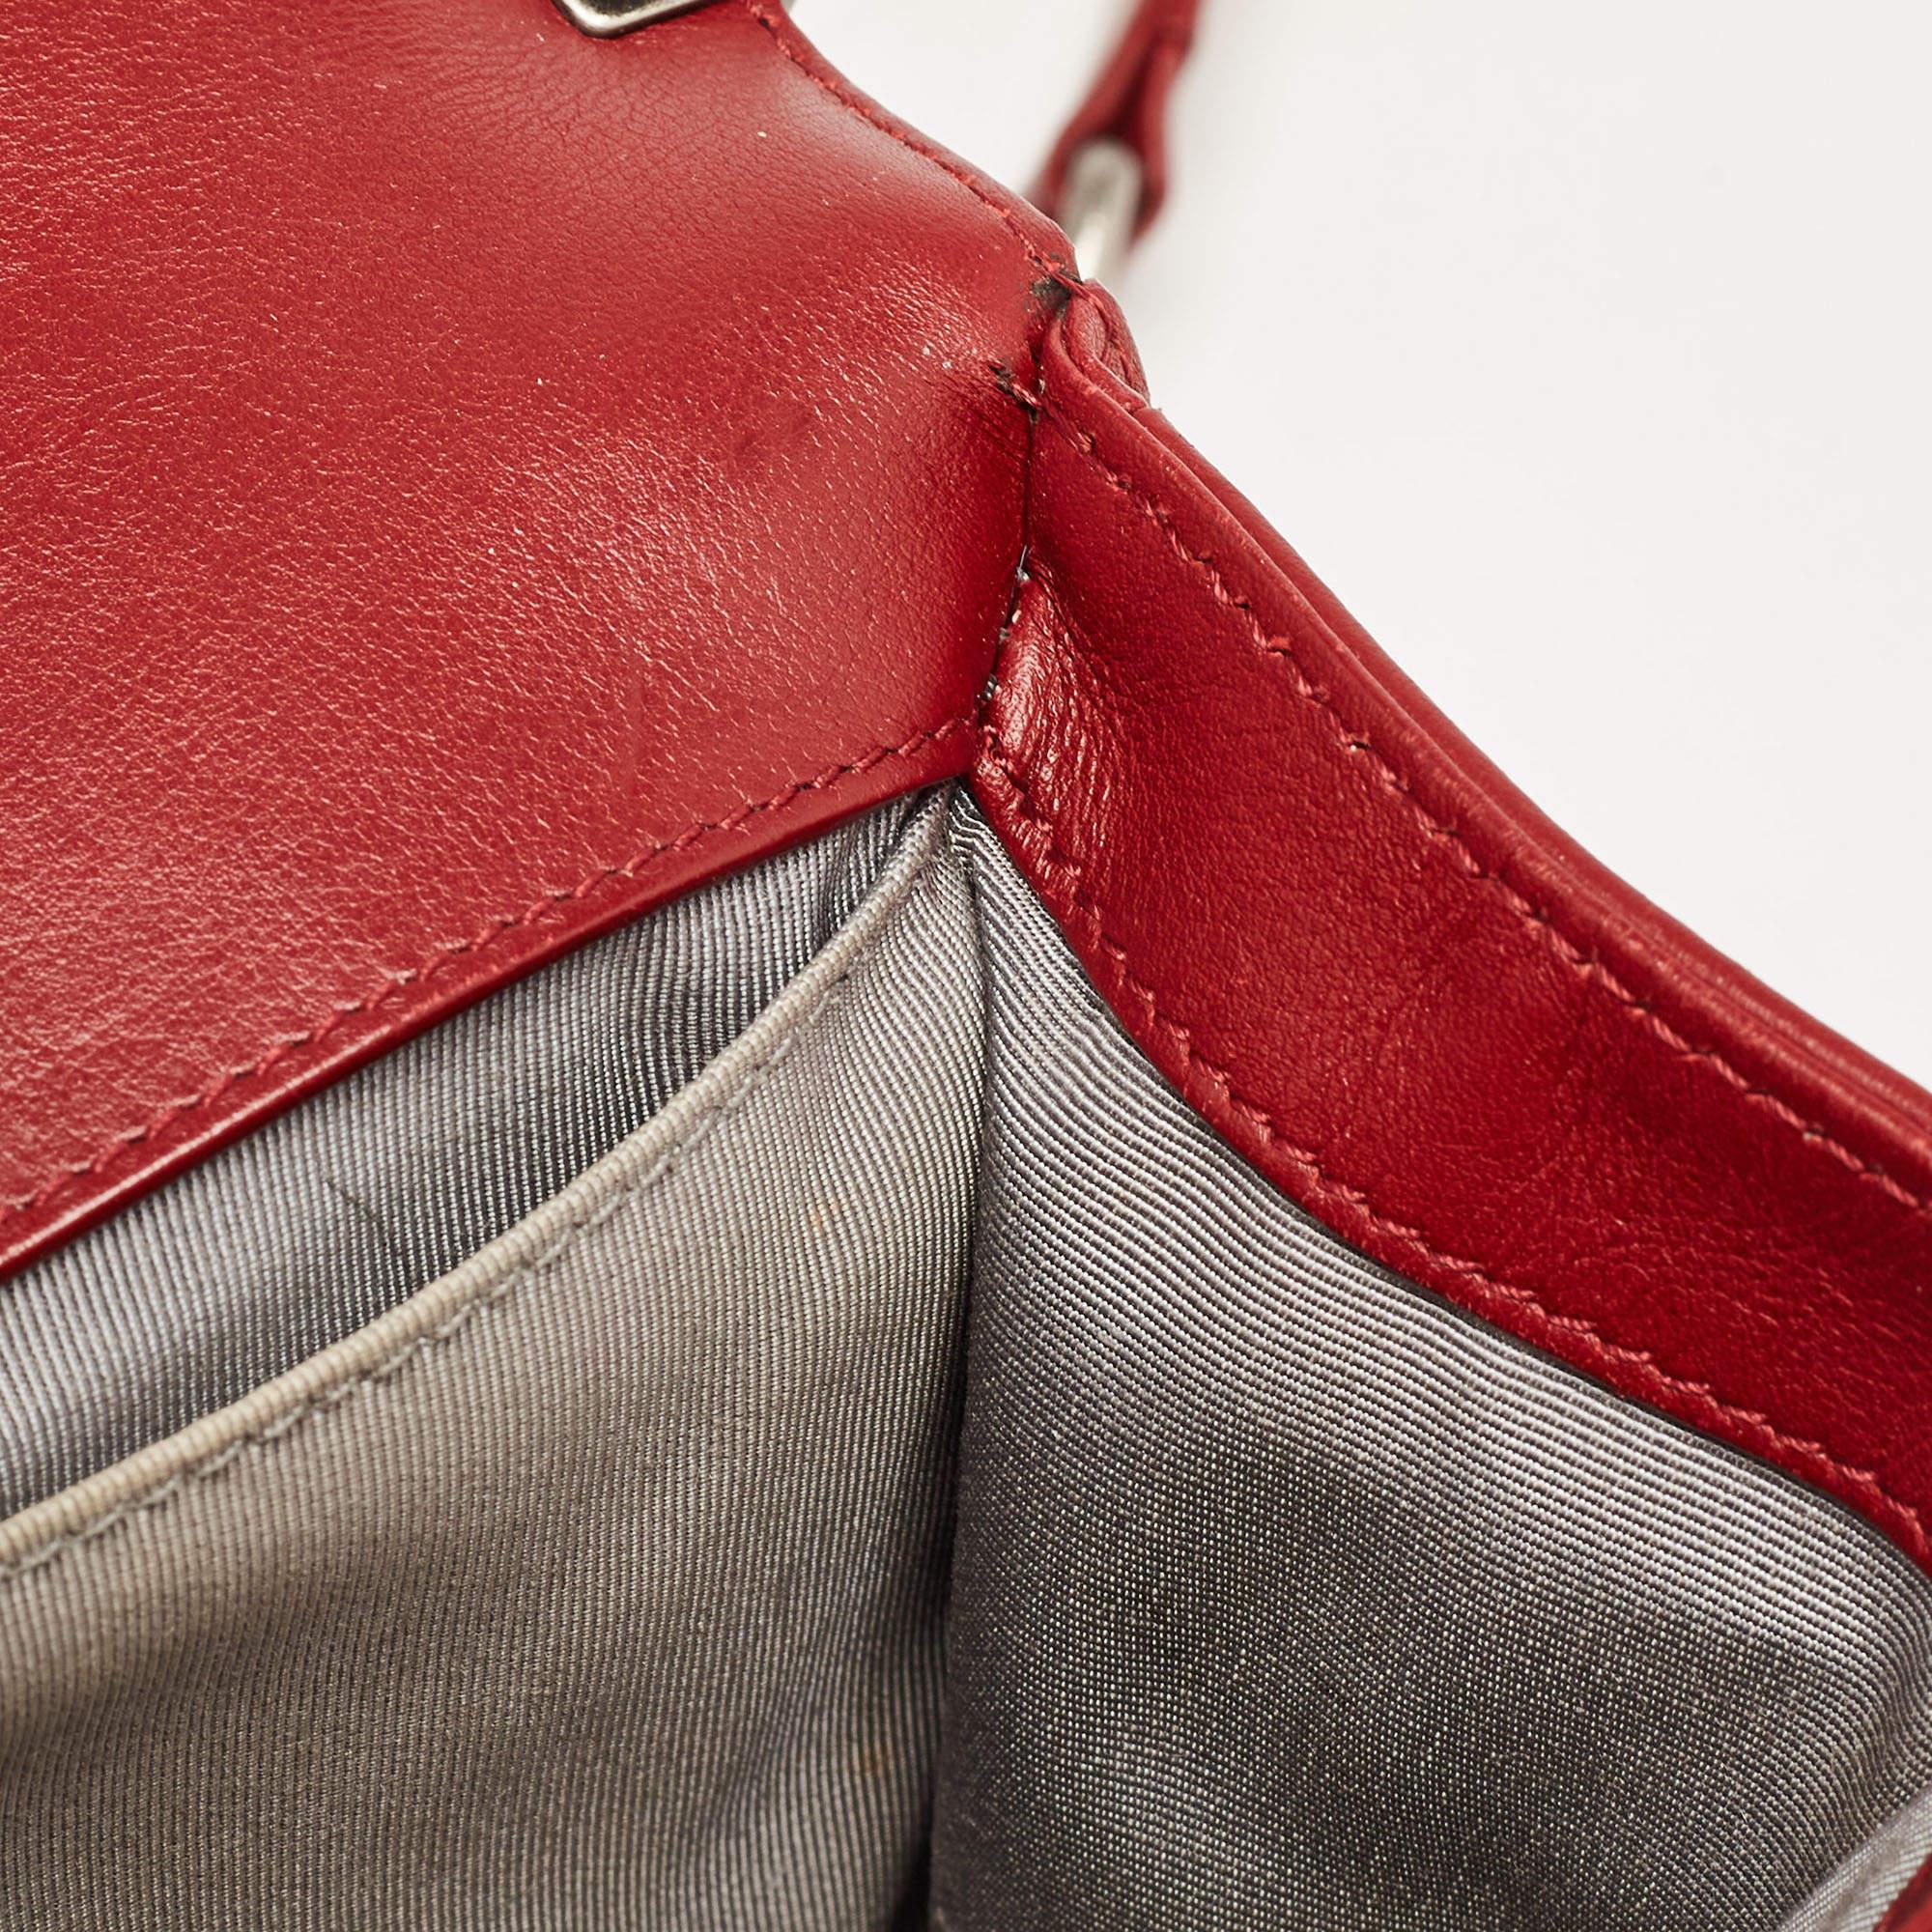 Chanel Red Chevron Leather Medium Boy Bag 14